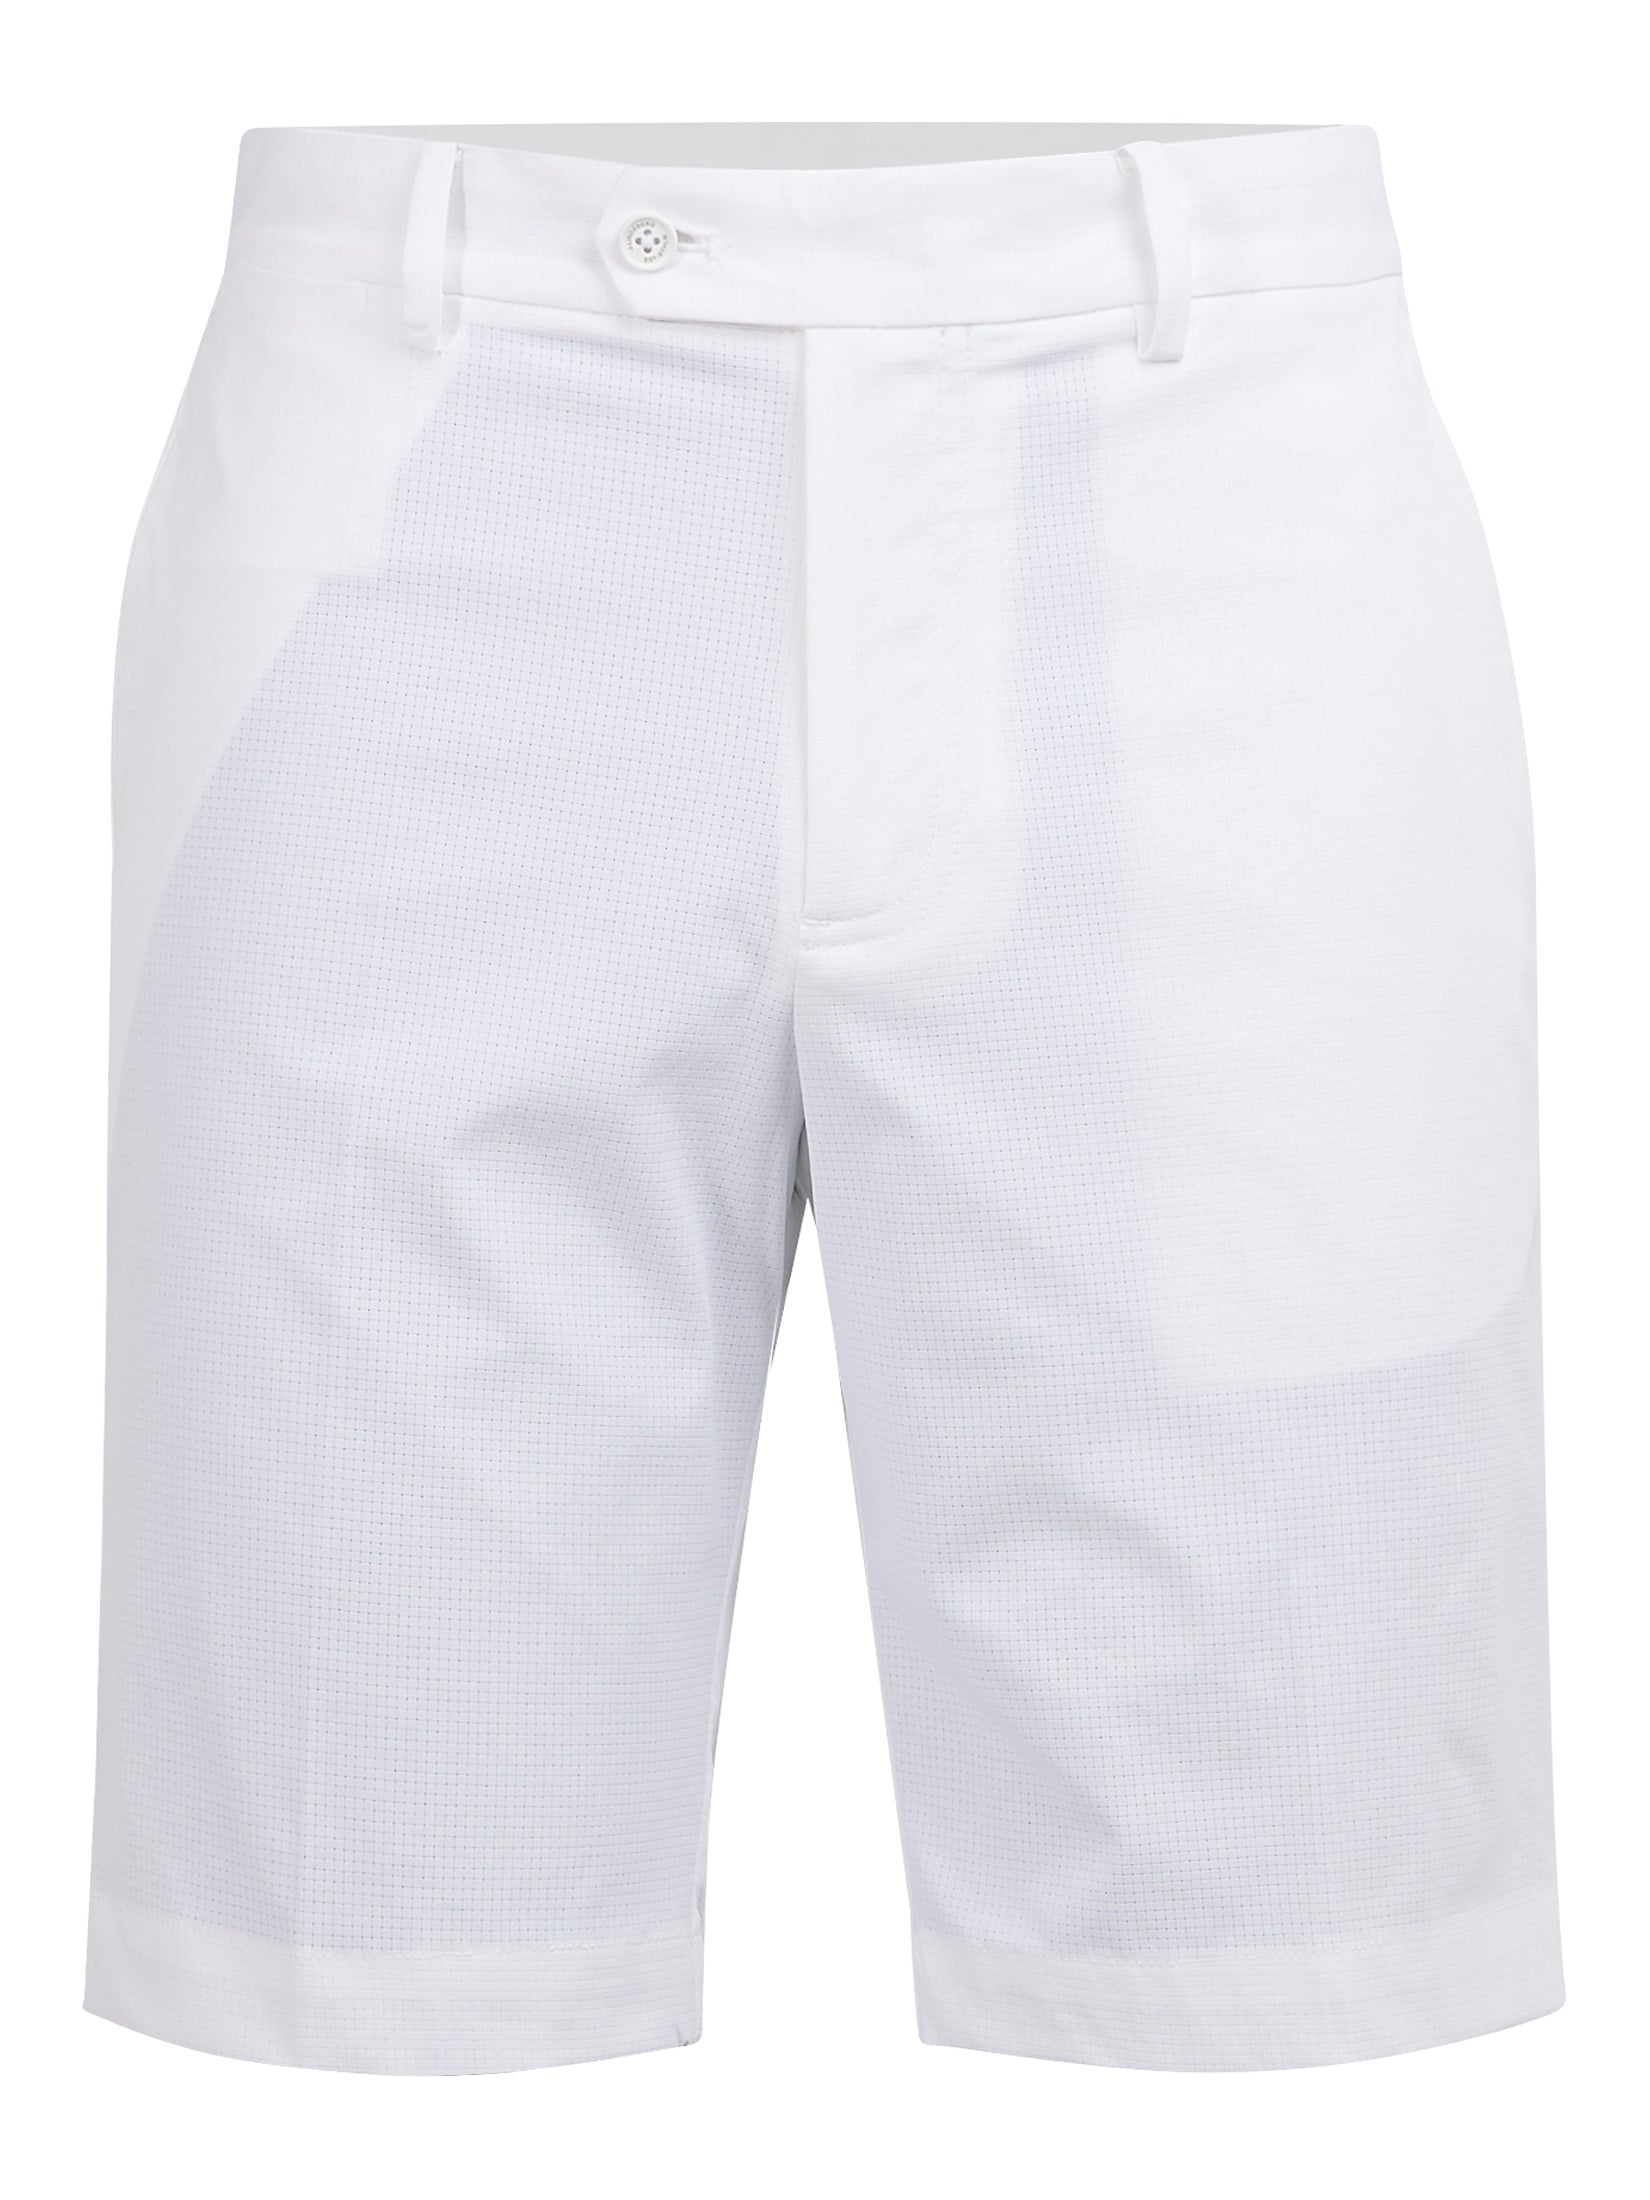 Vent Golf Shorts White